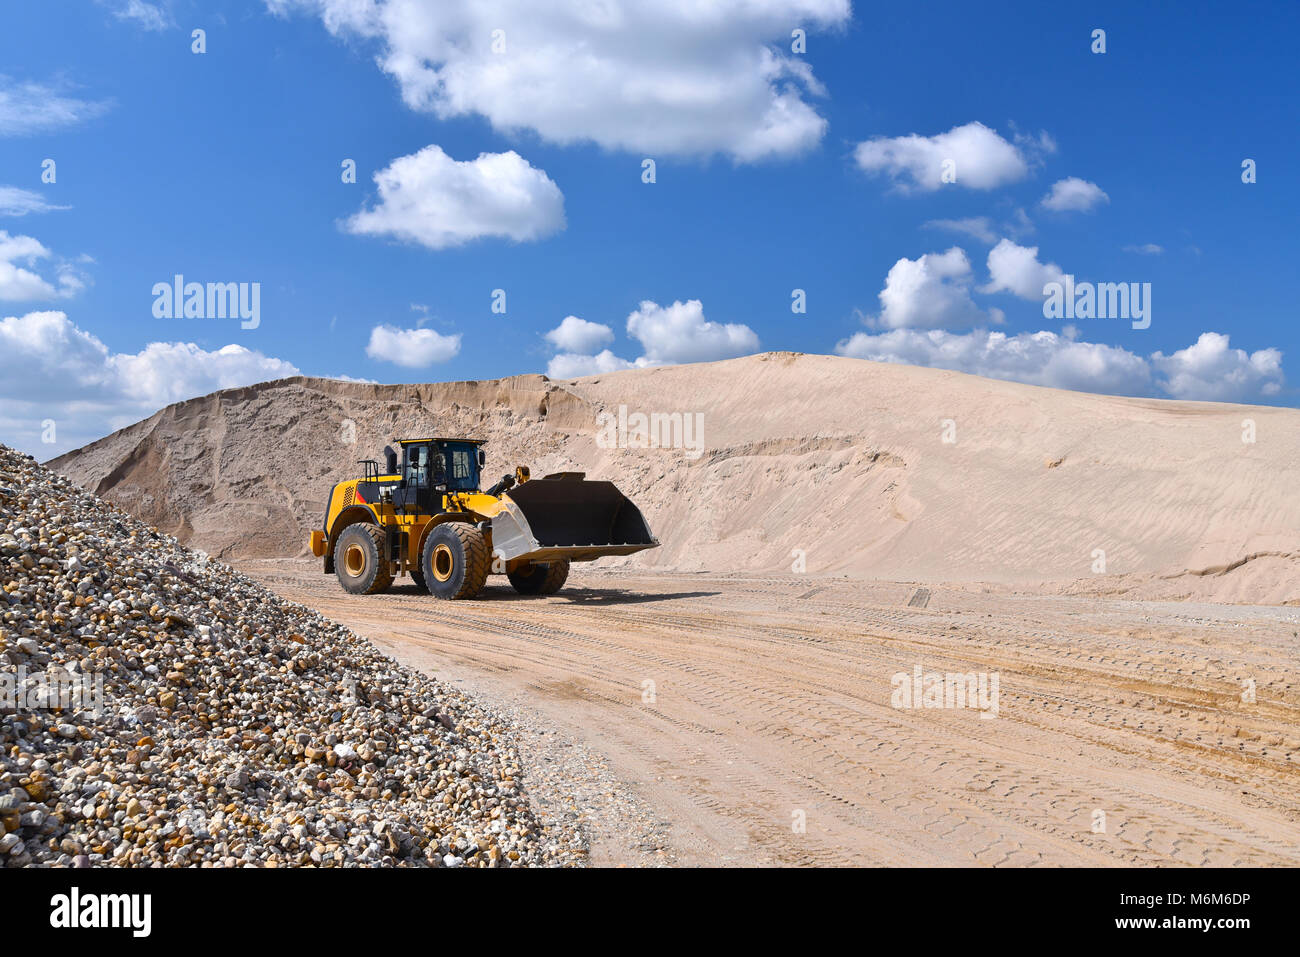 Bergbau in einem offenen Sandkasten für die Produktion von Schotter, Sand  und Kies für den Einsatz in Industrie und Baugewerbe Stockfotografie - Alamy